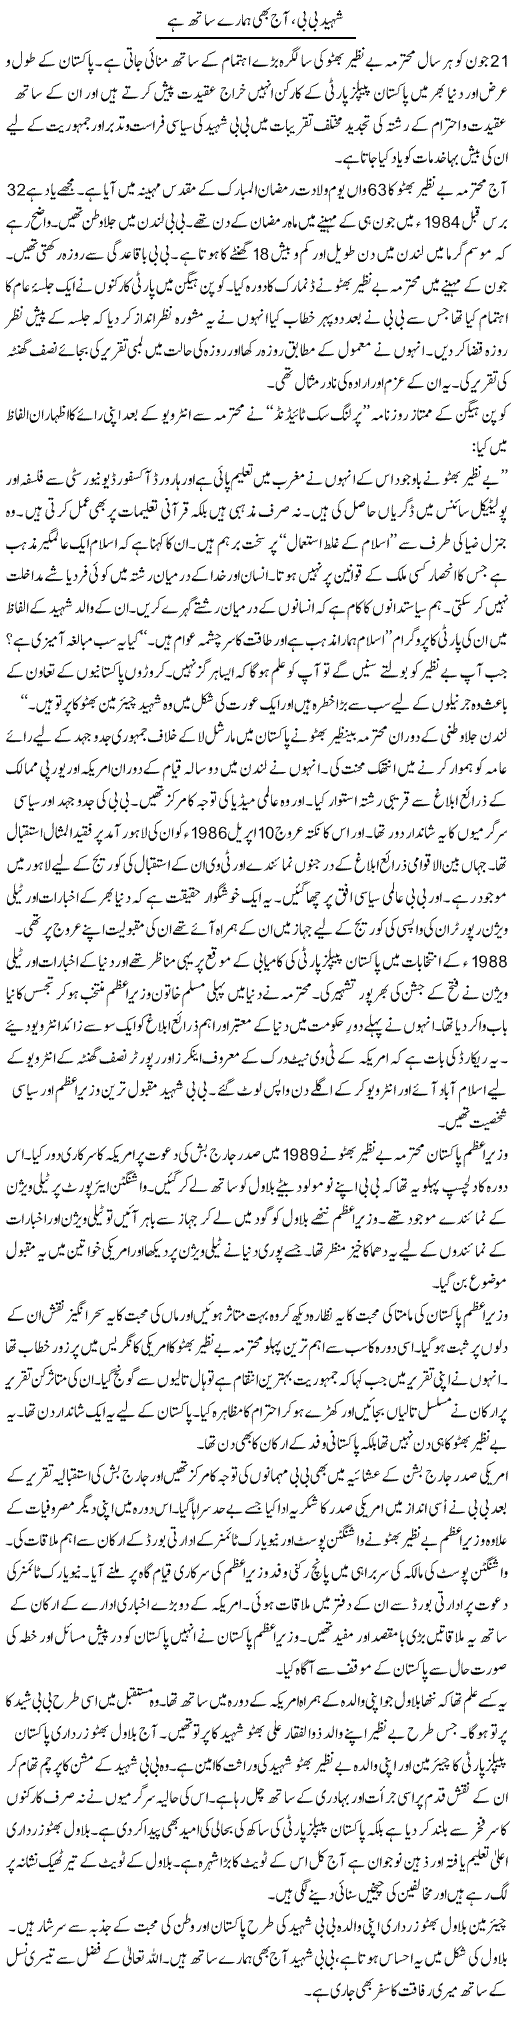 Shaheed Bibi, Aaj Bhi Hamare Sath Hai | Bashir Riaz | Daily Urdu Columns